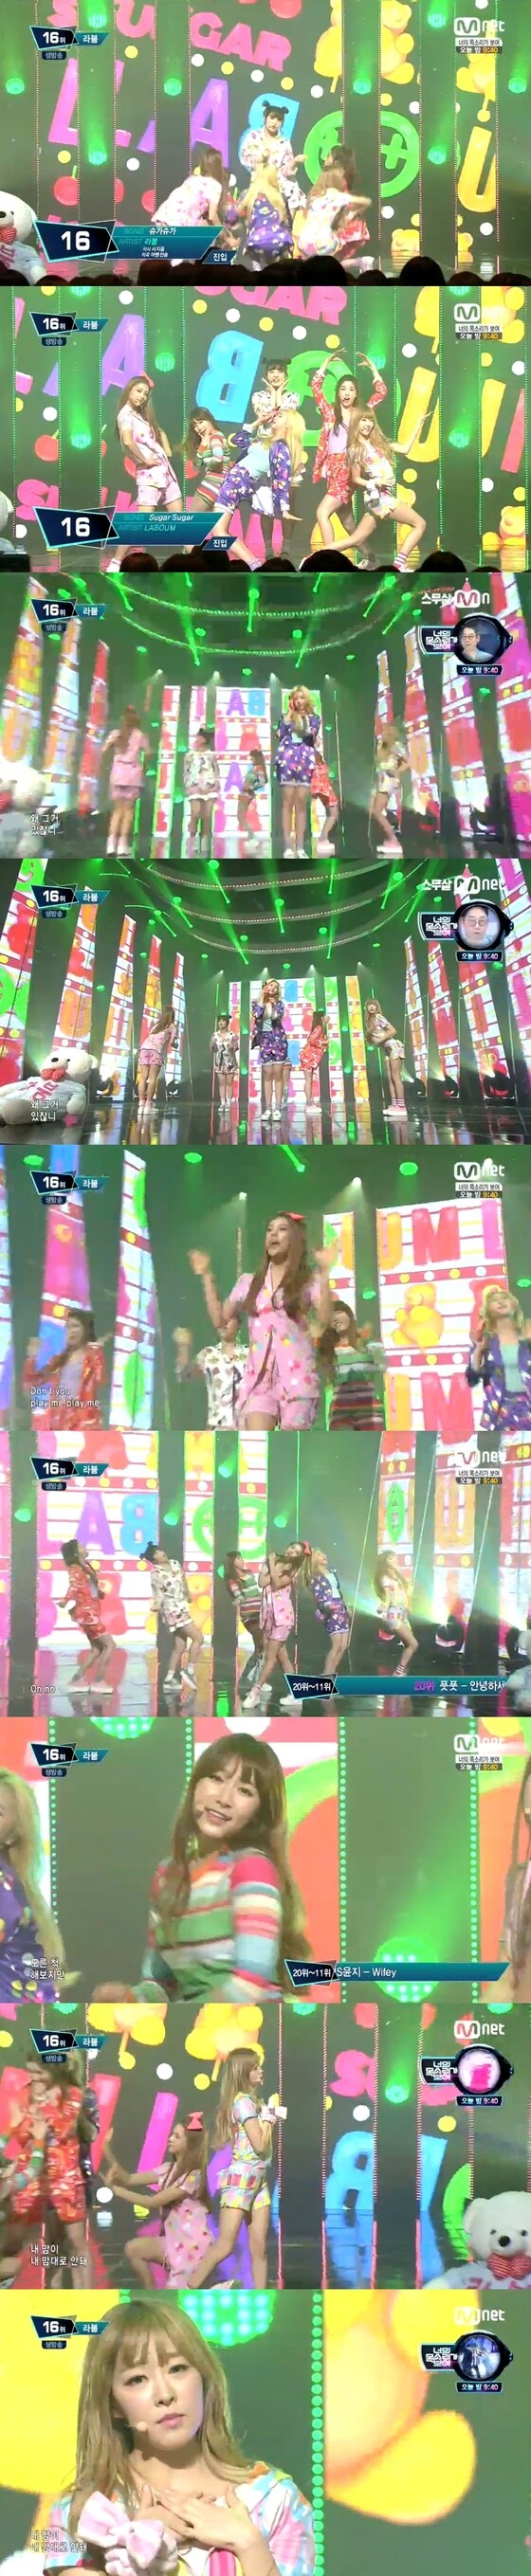 2일 오후 6시 방송된 Mnet ´엠카운트다운´에서 라붐의 무대가 공개됐다. © 뉴스1스포츠 / Mnet ´엠카운트다운´ 캡처